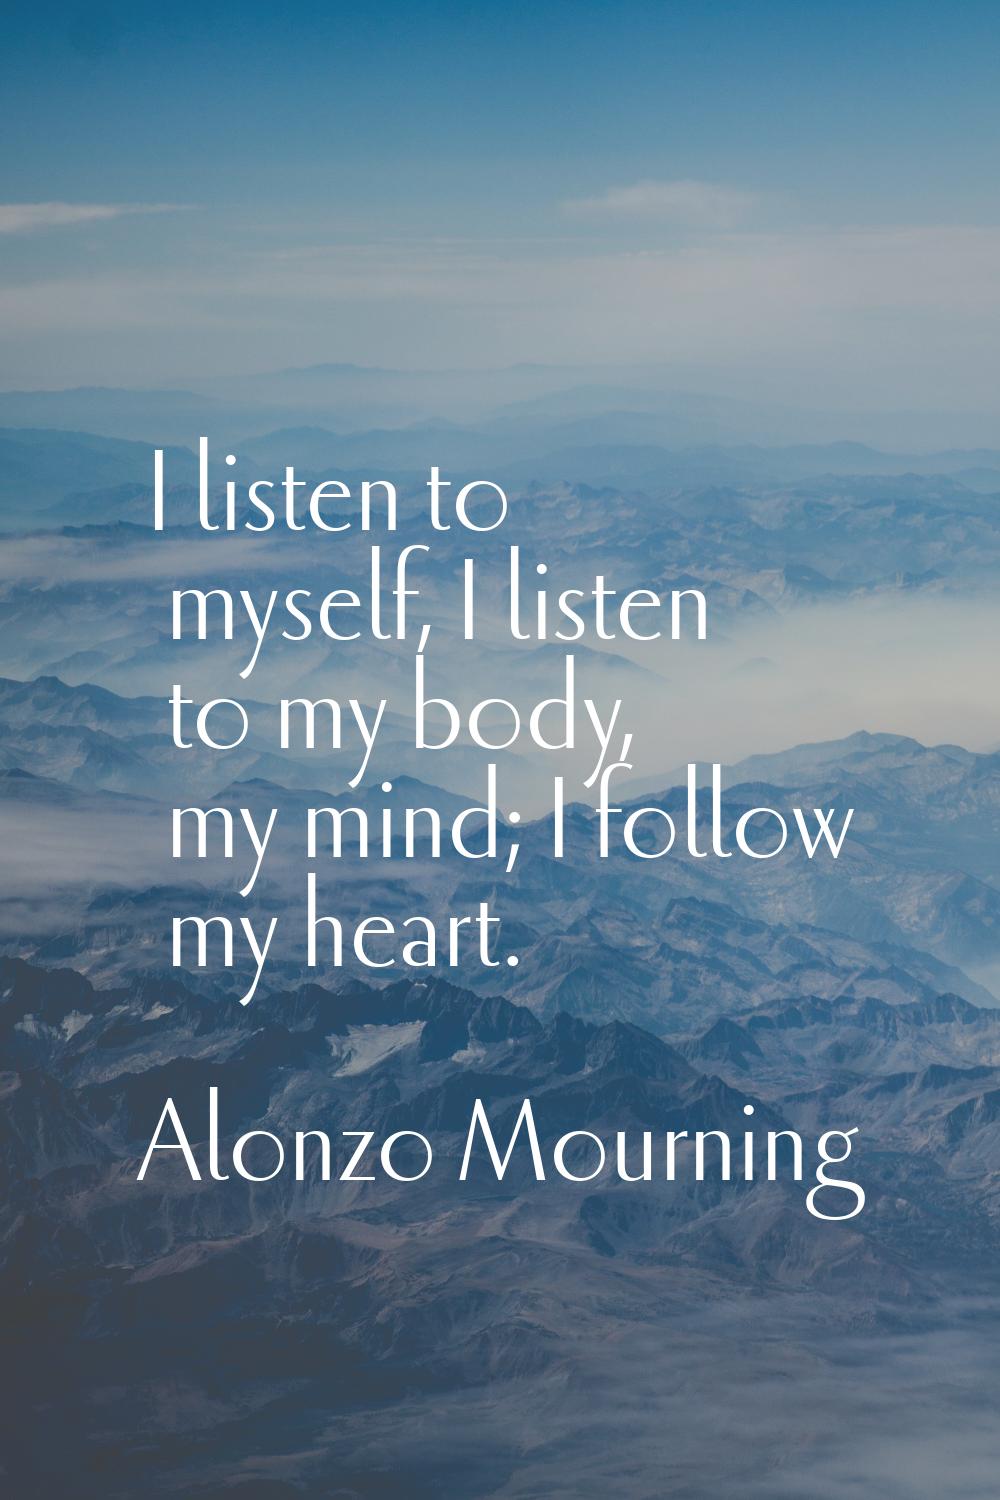 I listen to myself, I listen to my body, my mind; I follow my heart.